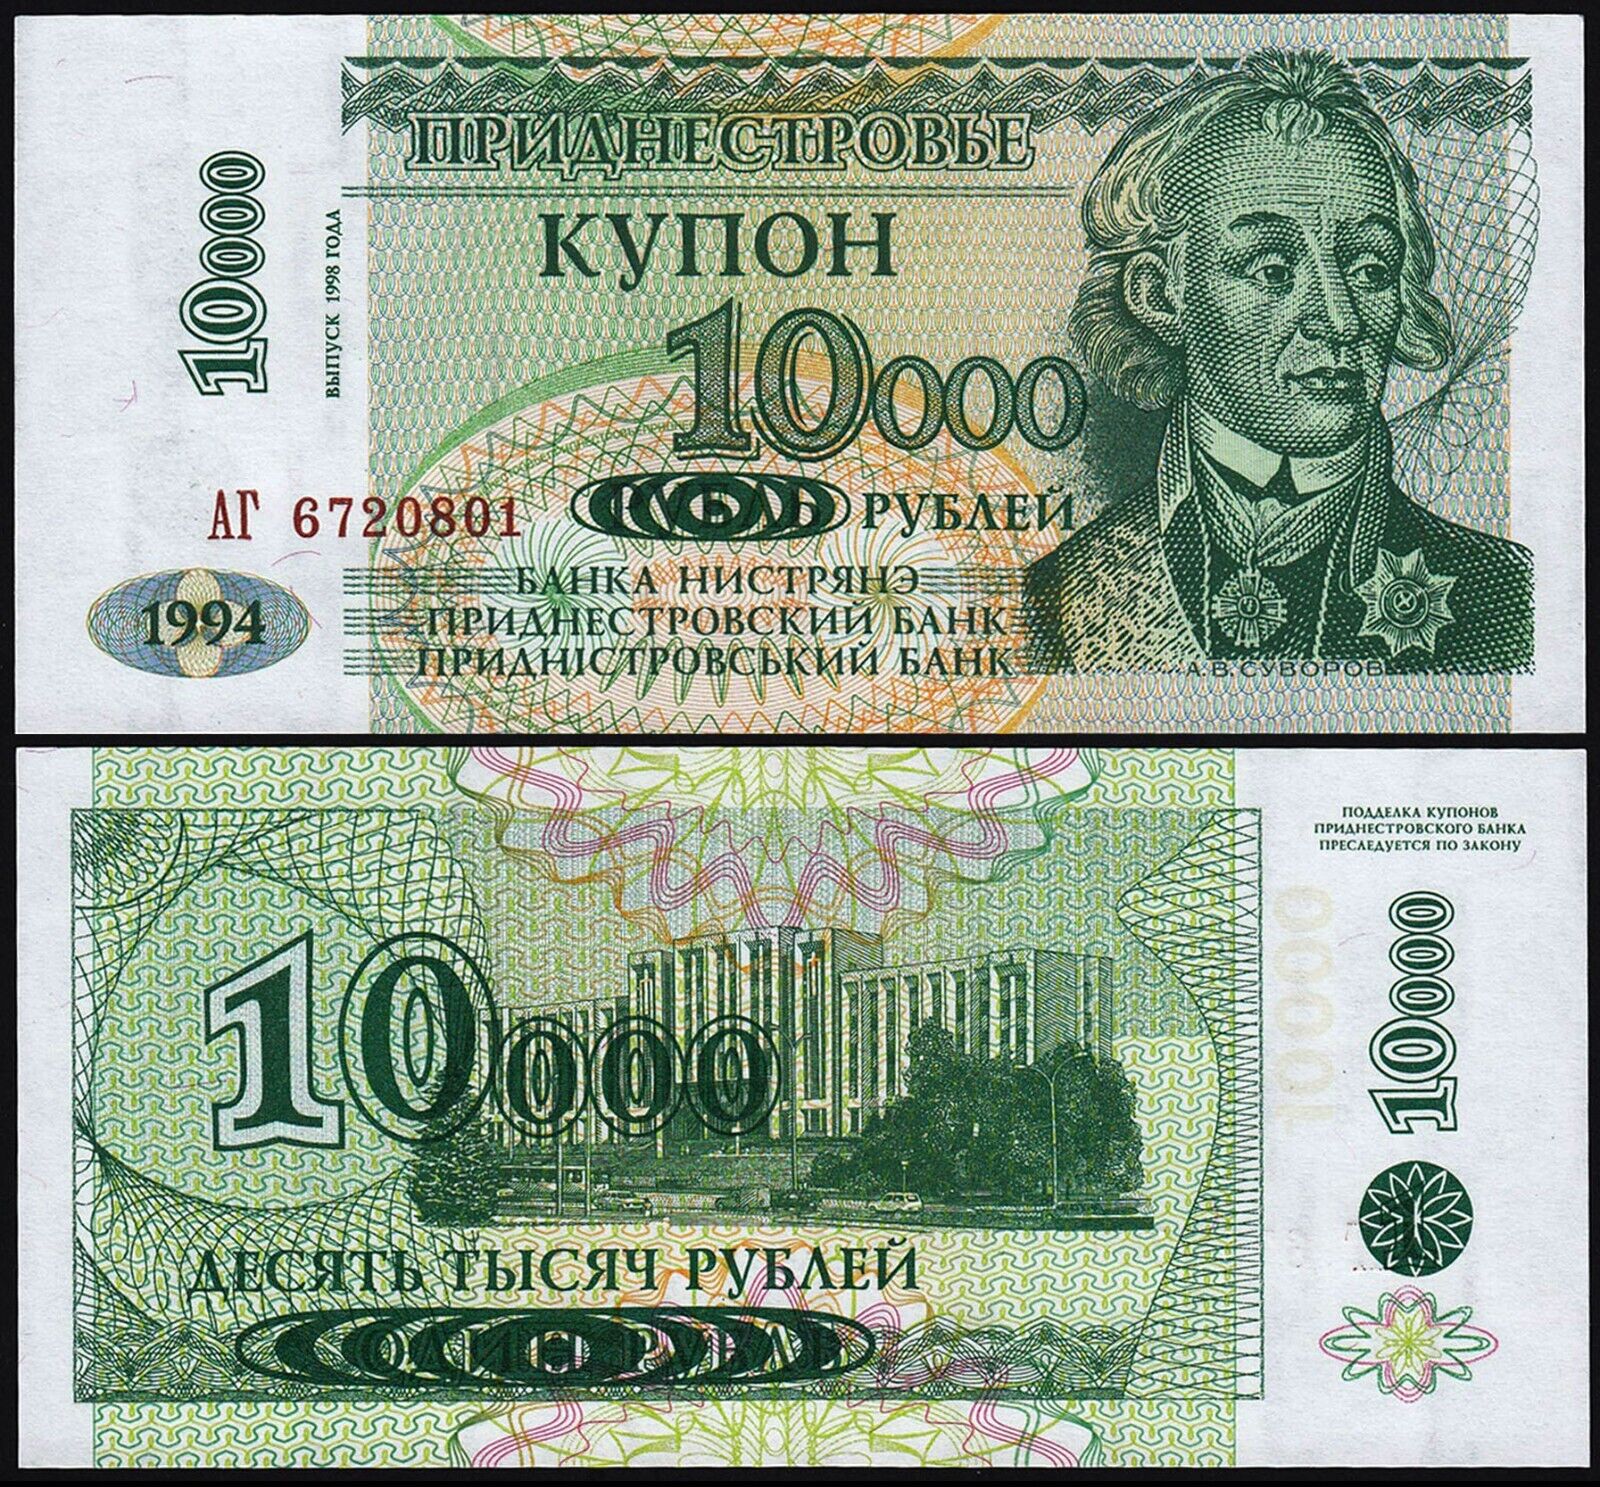 Transnistria 1998 - 10000 ruble UNC